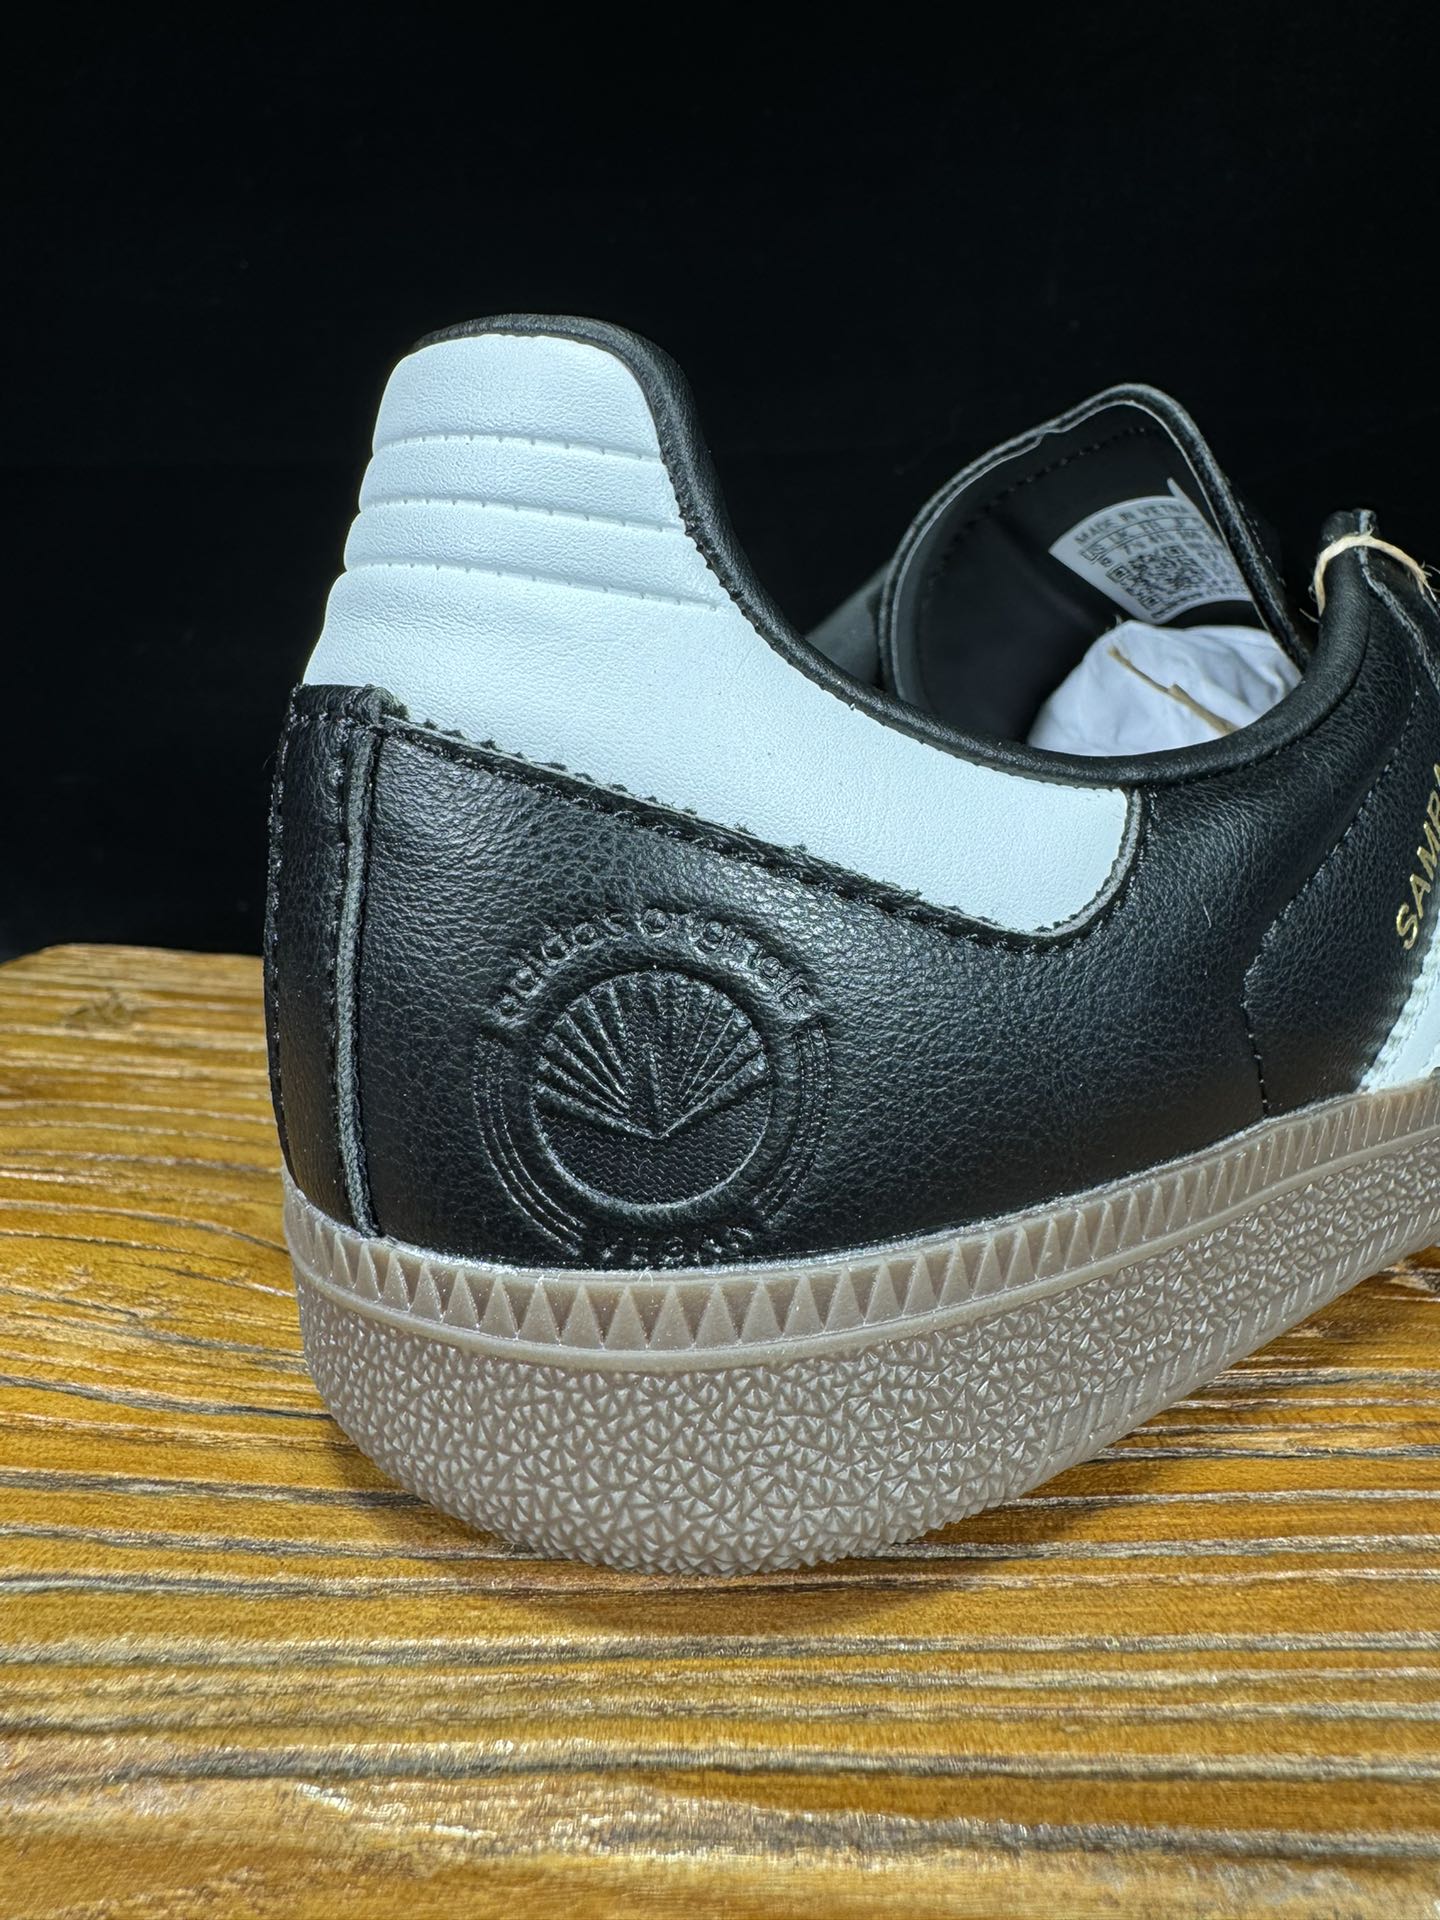 阿迪桑巴德训鞋联名黑灰色Adidas/阿迪达斯SAMBAVEGAN黑白男女低帮经典运动鞋板鞋FX9042